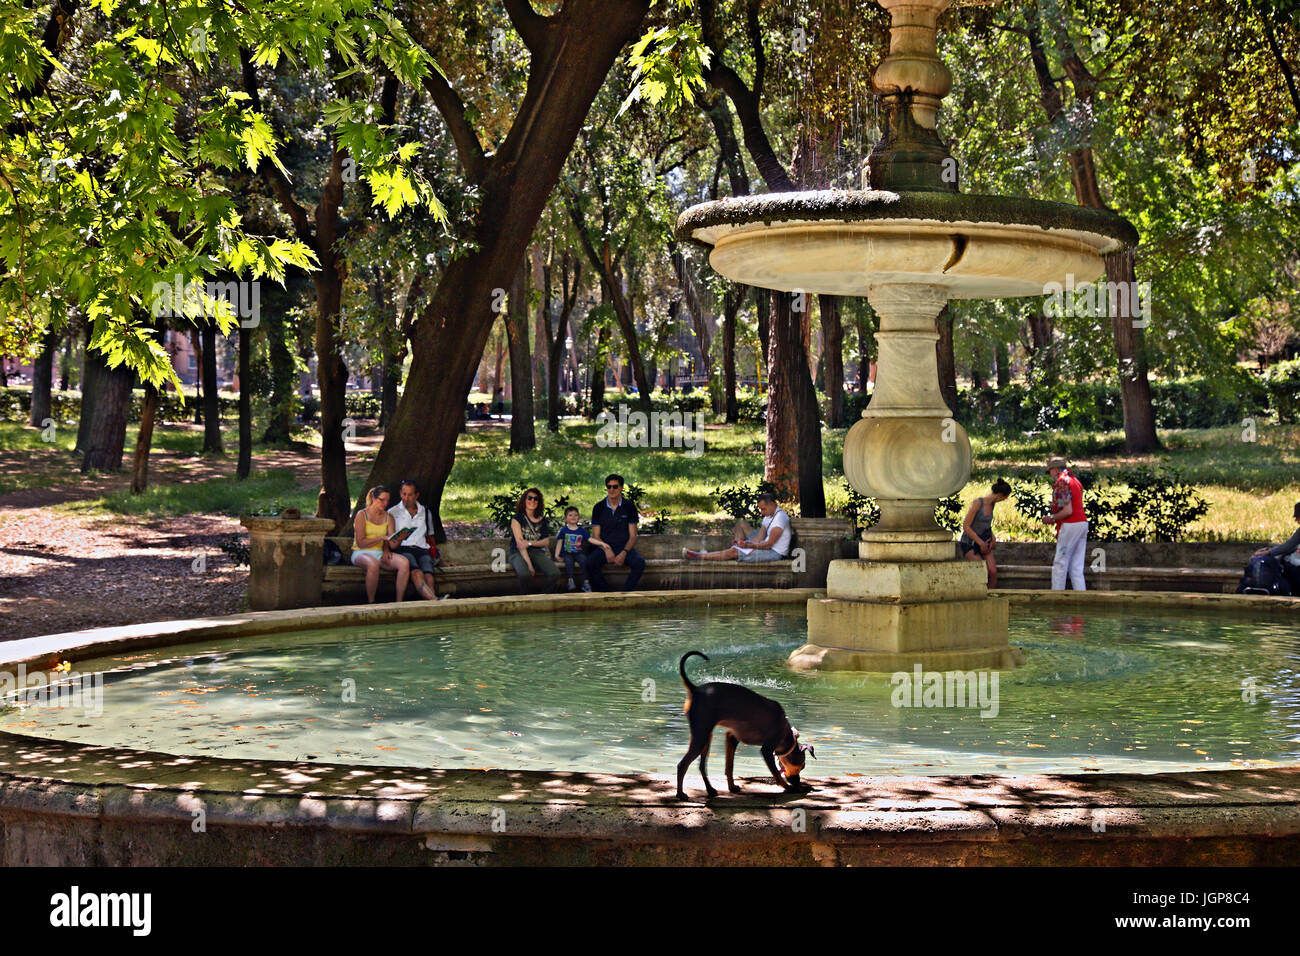 Fountain in Villa Borghese gardens, Rome, Italy. Stock Photo